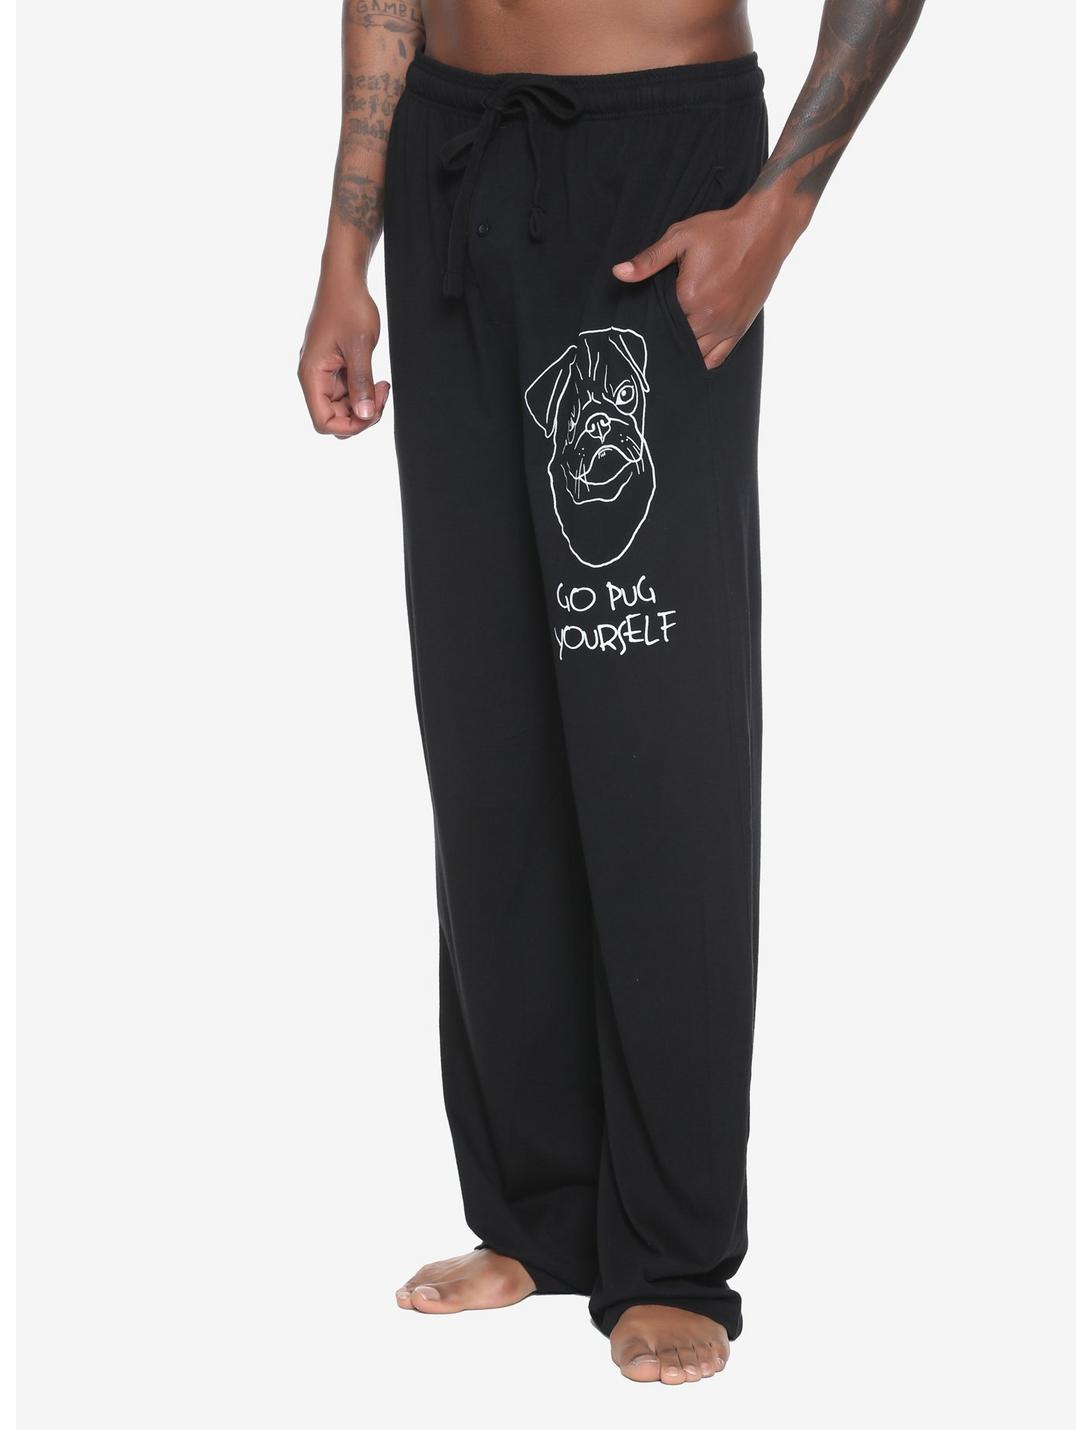 Go Pug Yourself Guys Pajama Pants, BLACK, hi-res